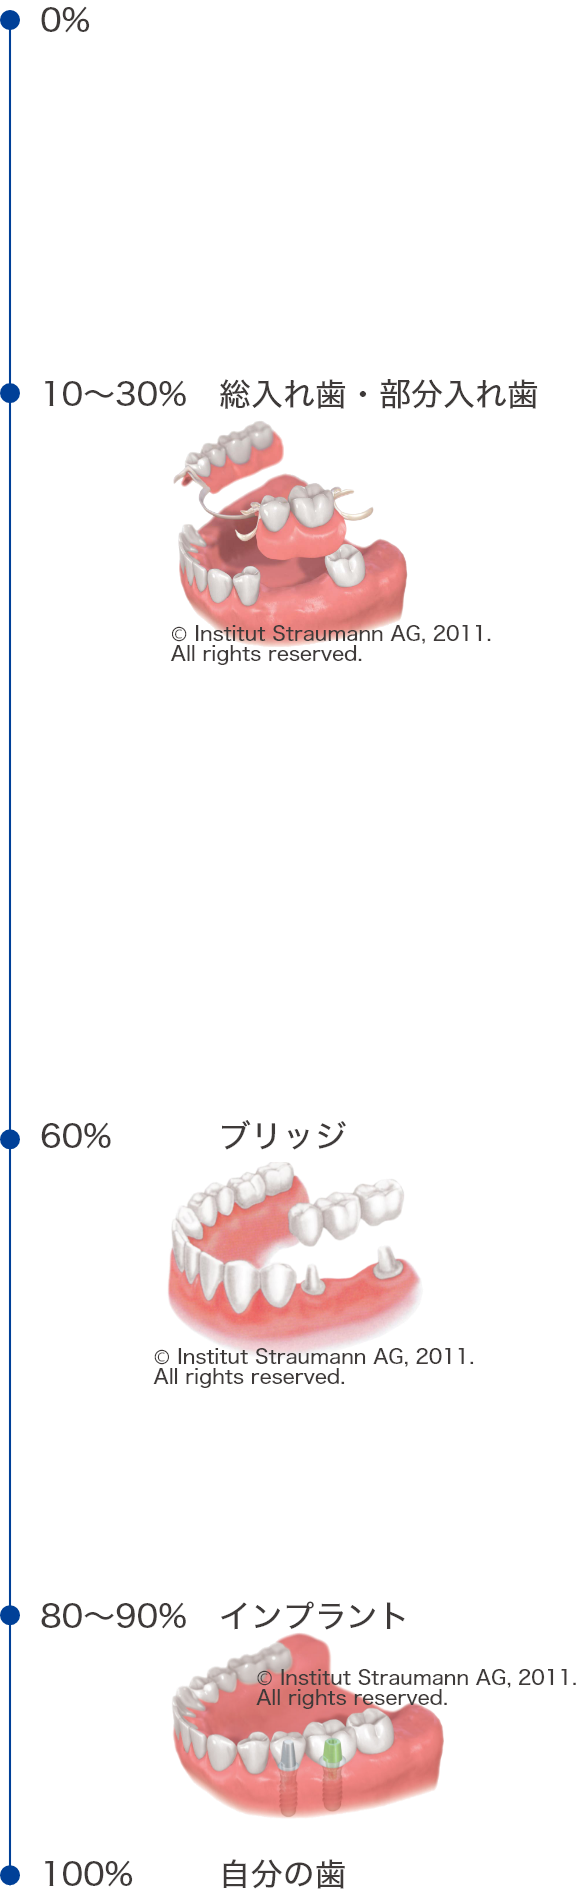 自分の歯：100％、インプラント：80～90％、ブリッジ：60％、総入れ歯・部分入れ歯：10～30％